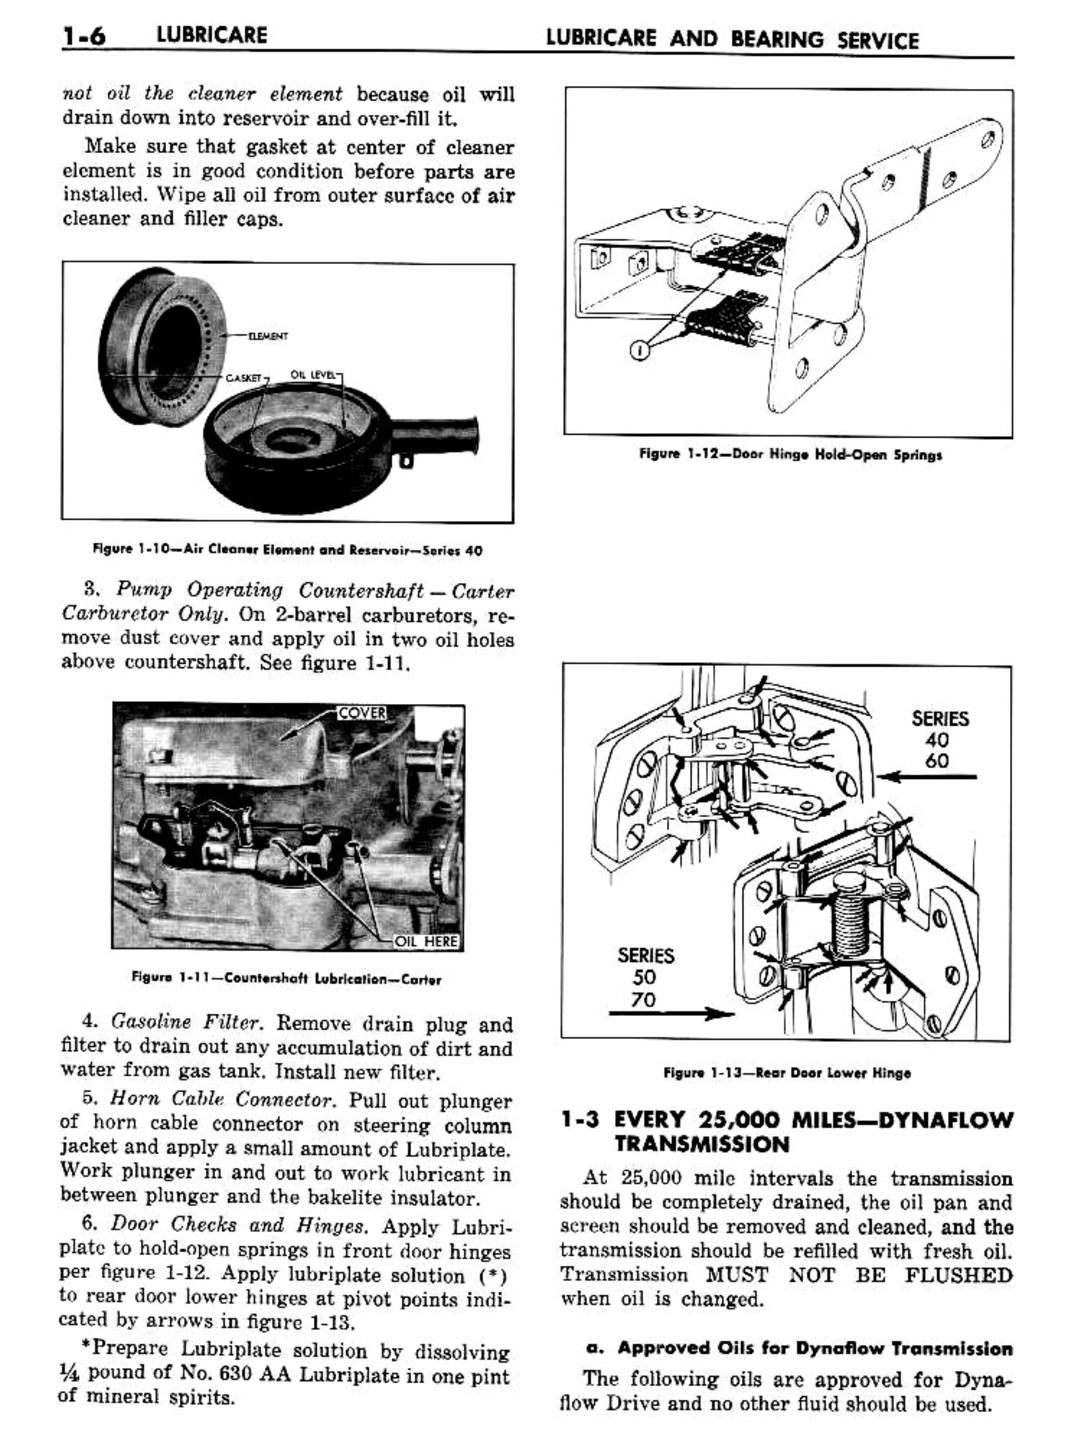 n_02 1957 Buick Shop Manual - Lubricare-006-006.jpg